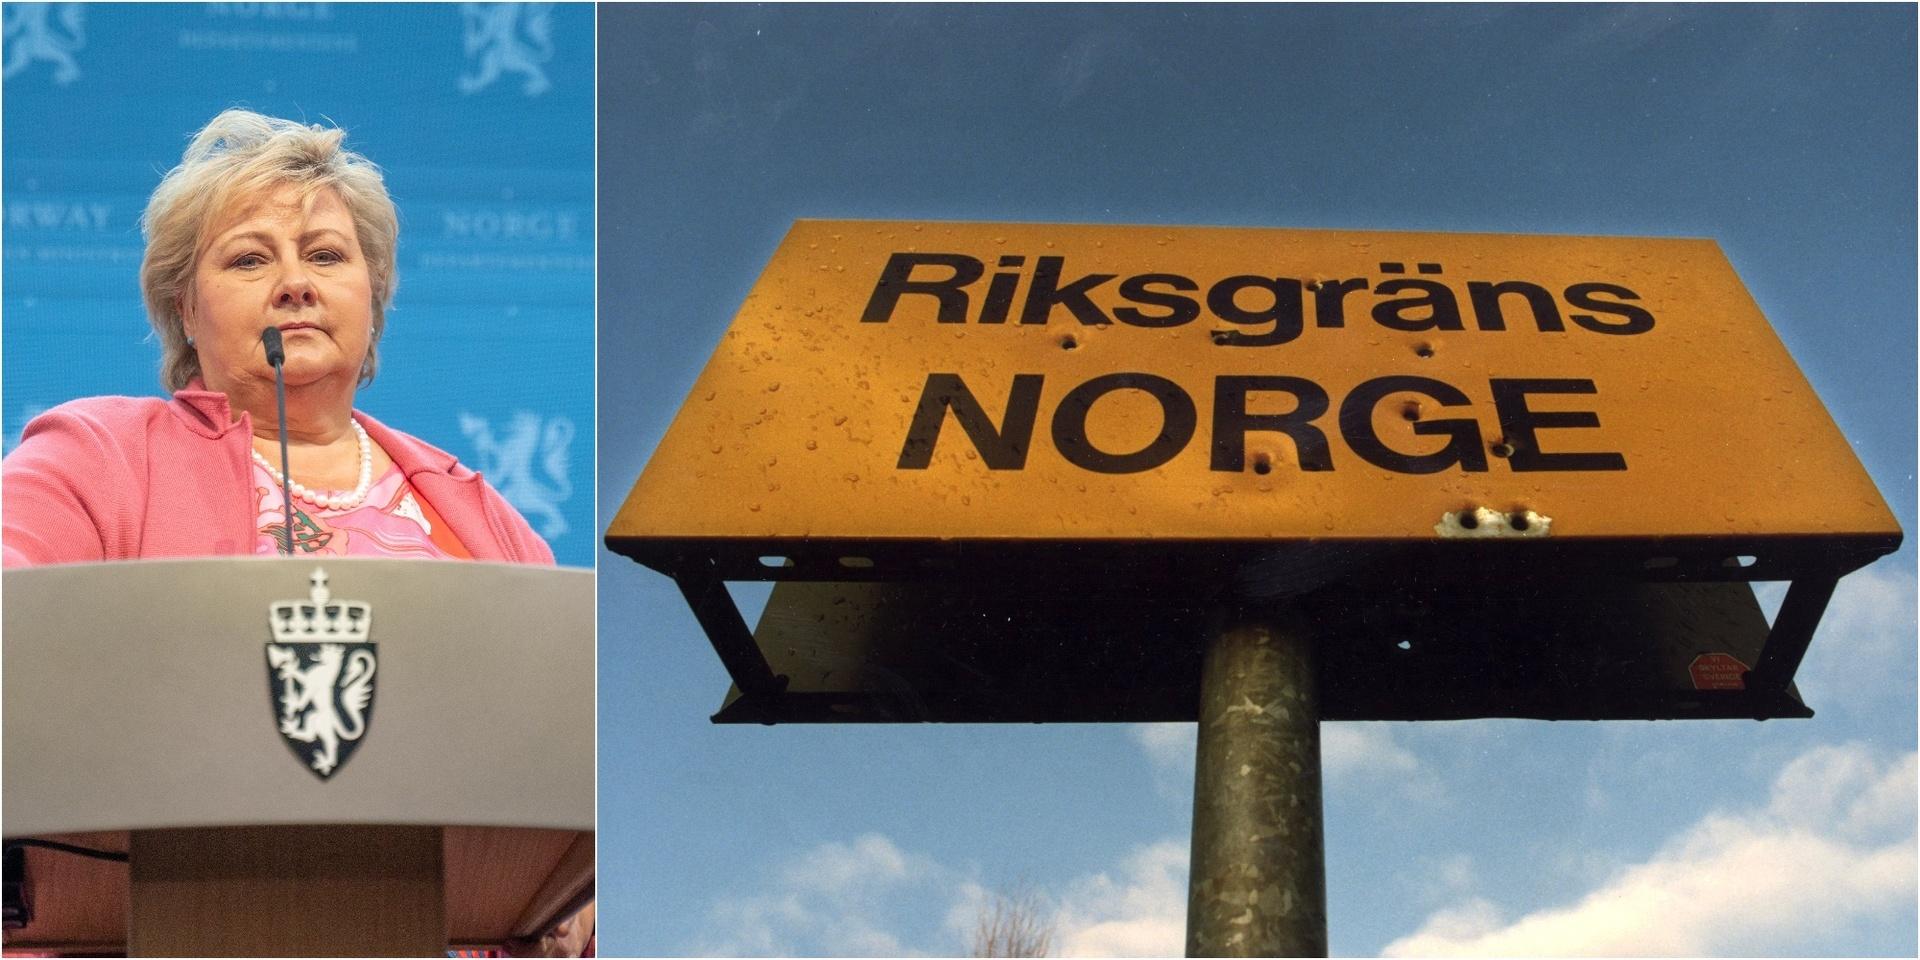 Från och med imorgon får norrmännen gå på nattklubb igen. ”Du får öva på dina moves, för imorgon är det okej att svänga loss på dansgolvet”, sa statsminister Erna Solberg under en presskonferens. 